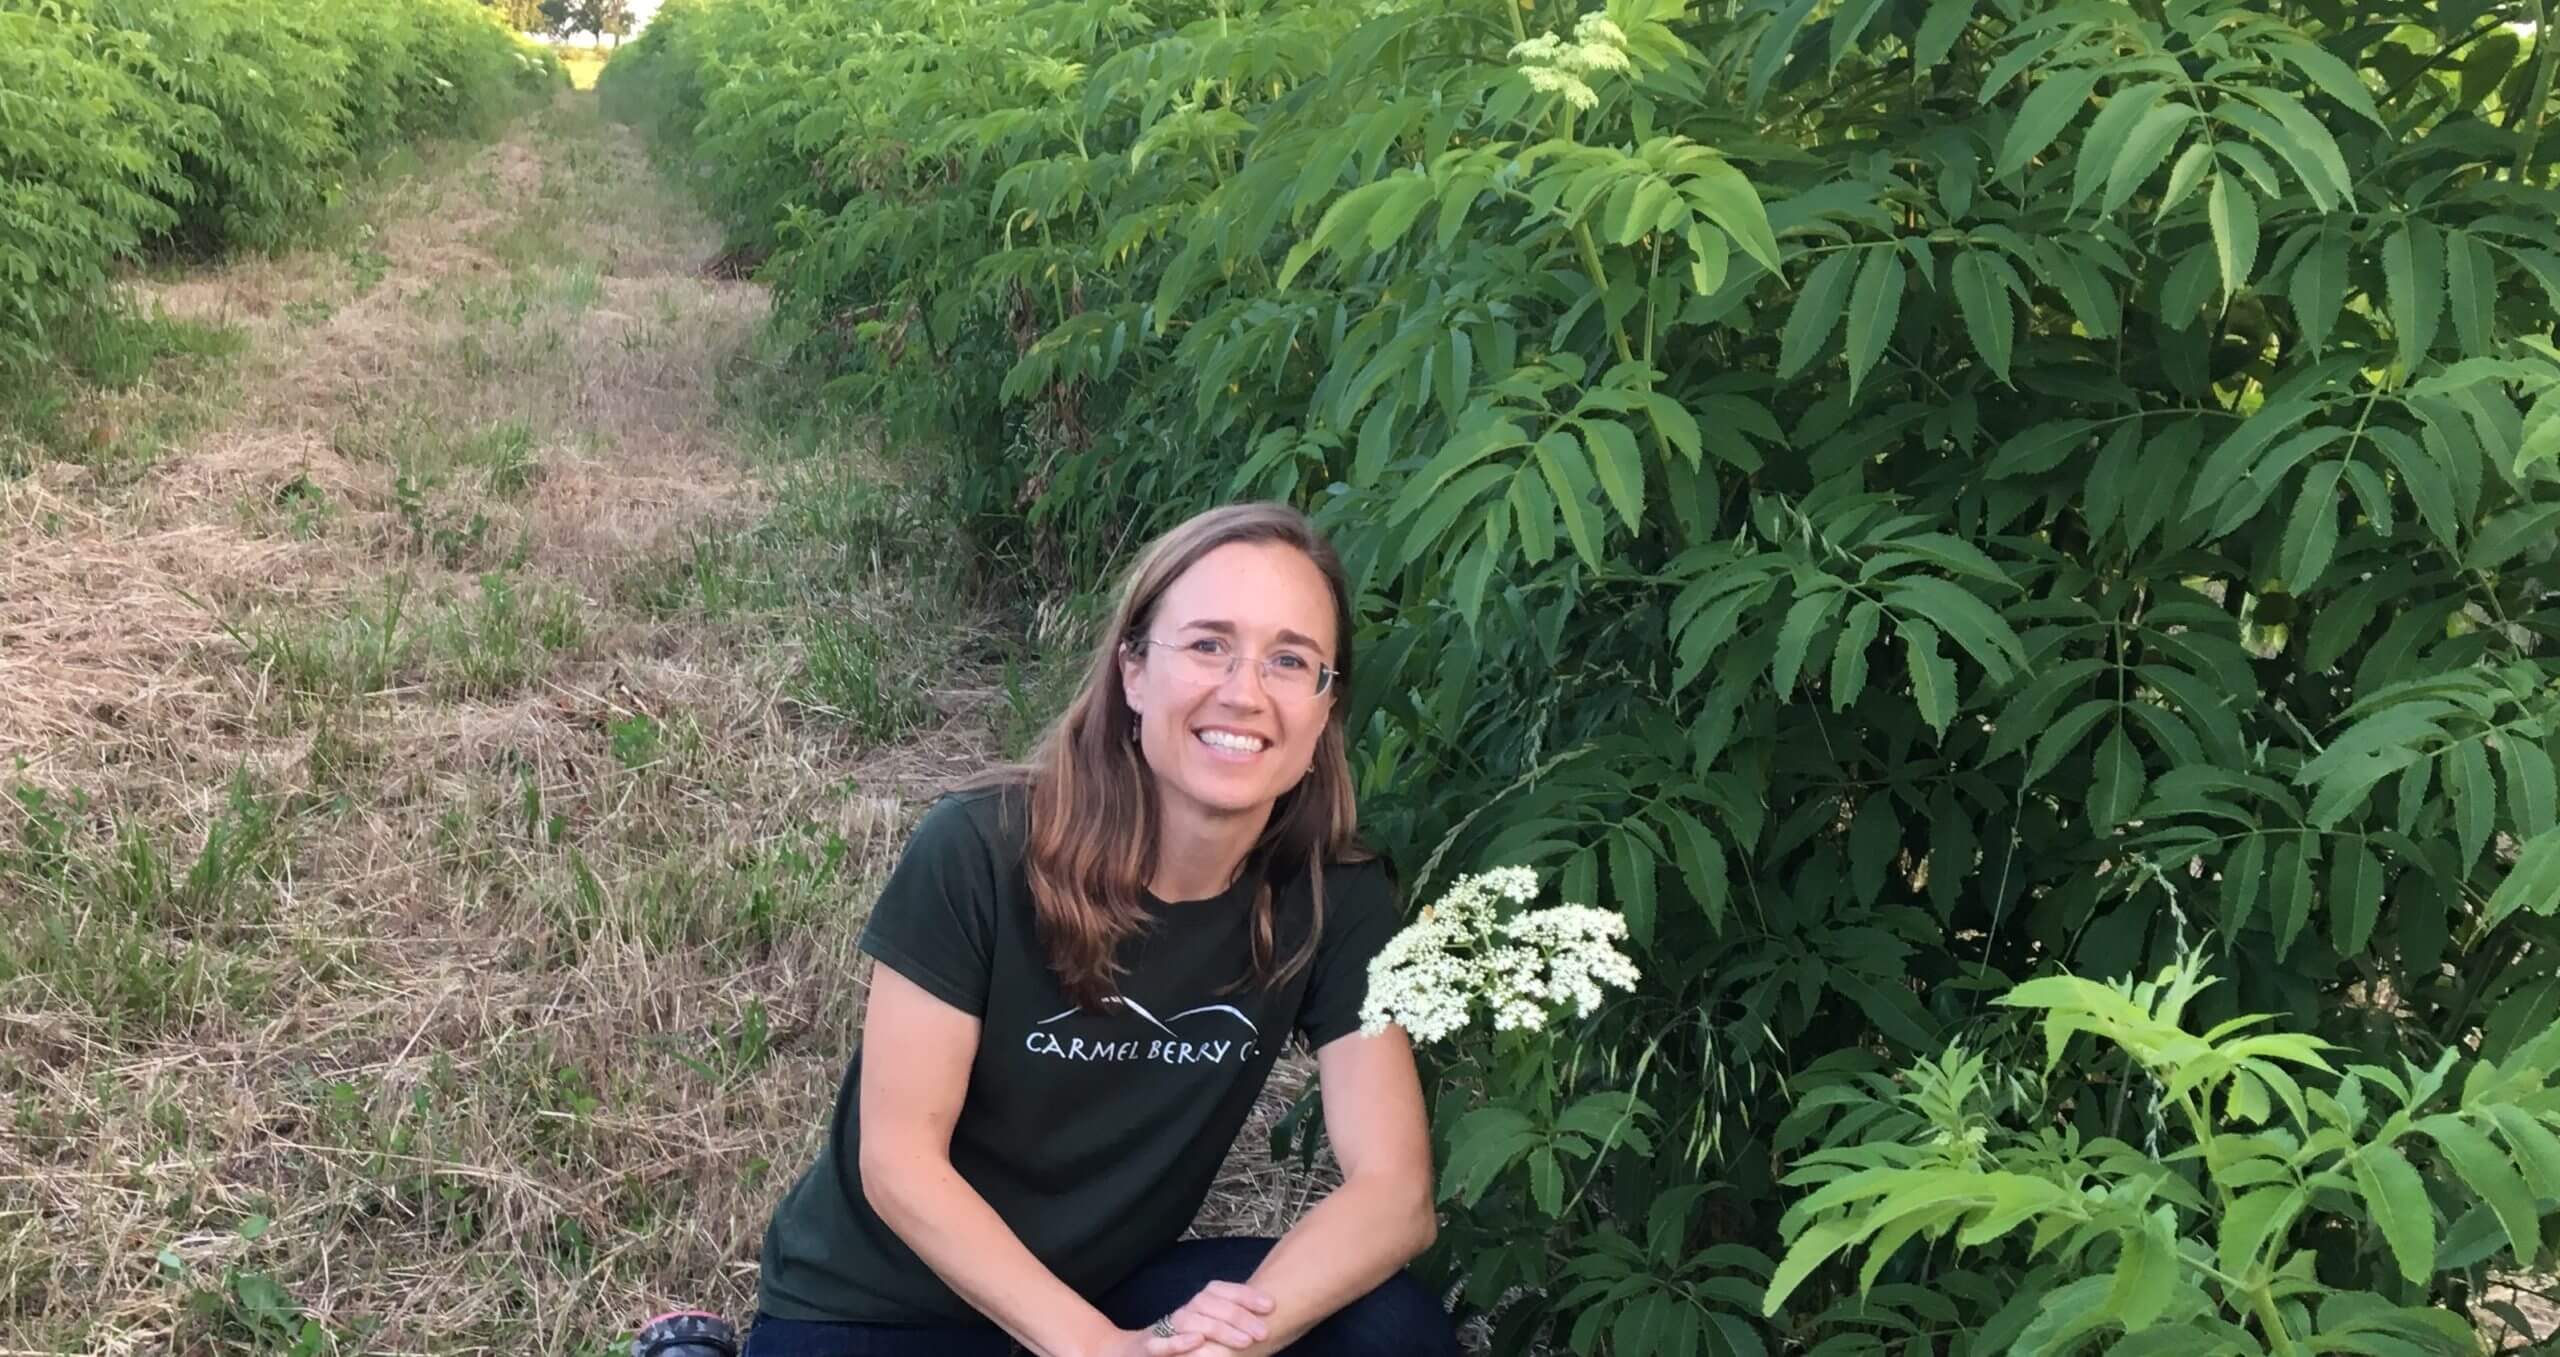 Carmel Berry Founder Katie Reneker with elderflower in field